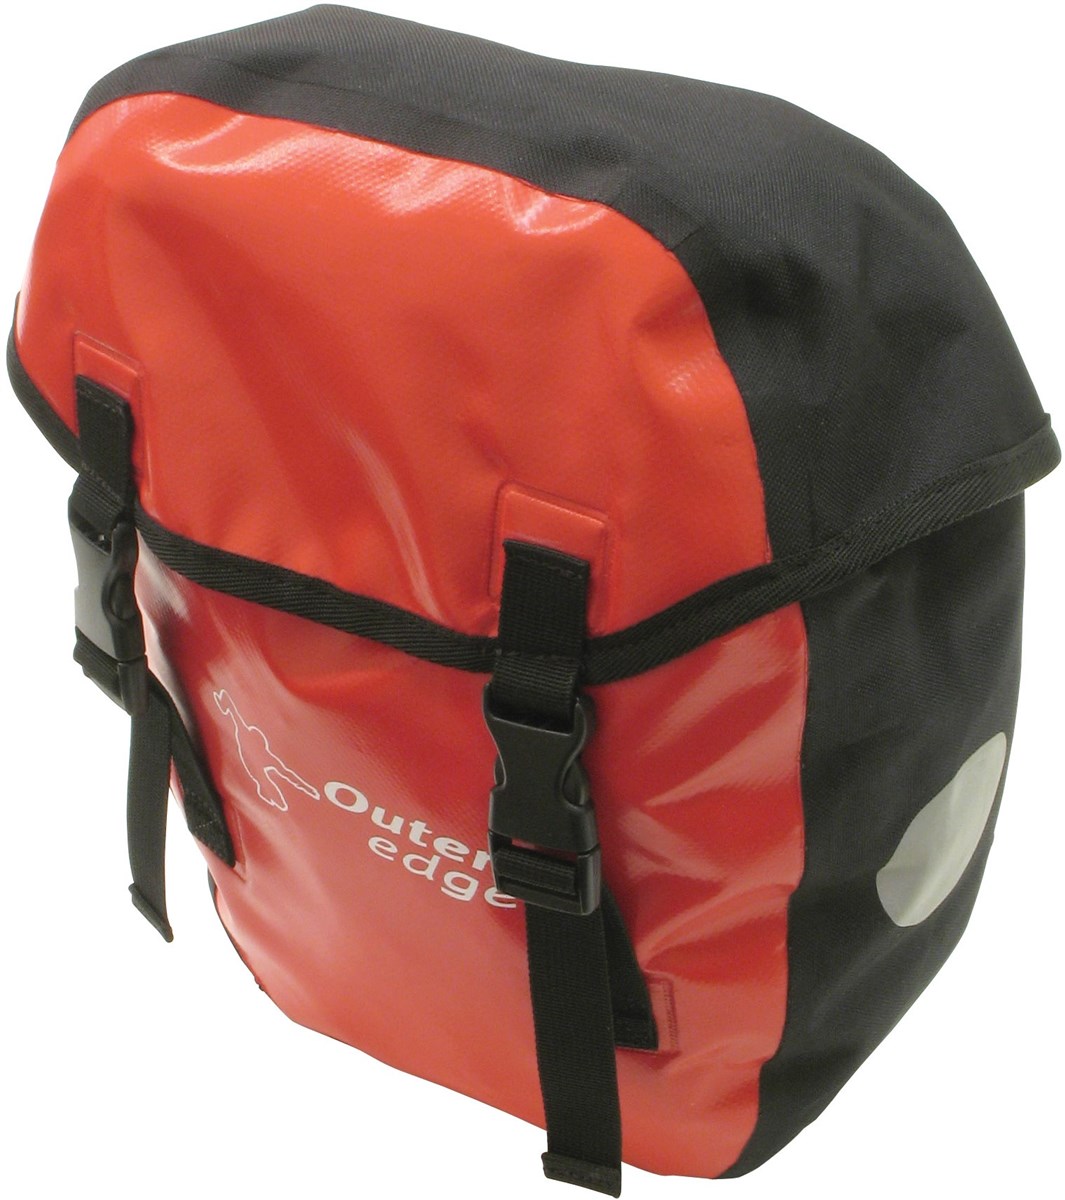 Outeredge Waterproof 16 Litre Pannier Bag